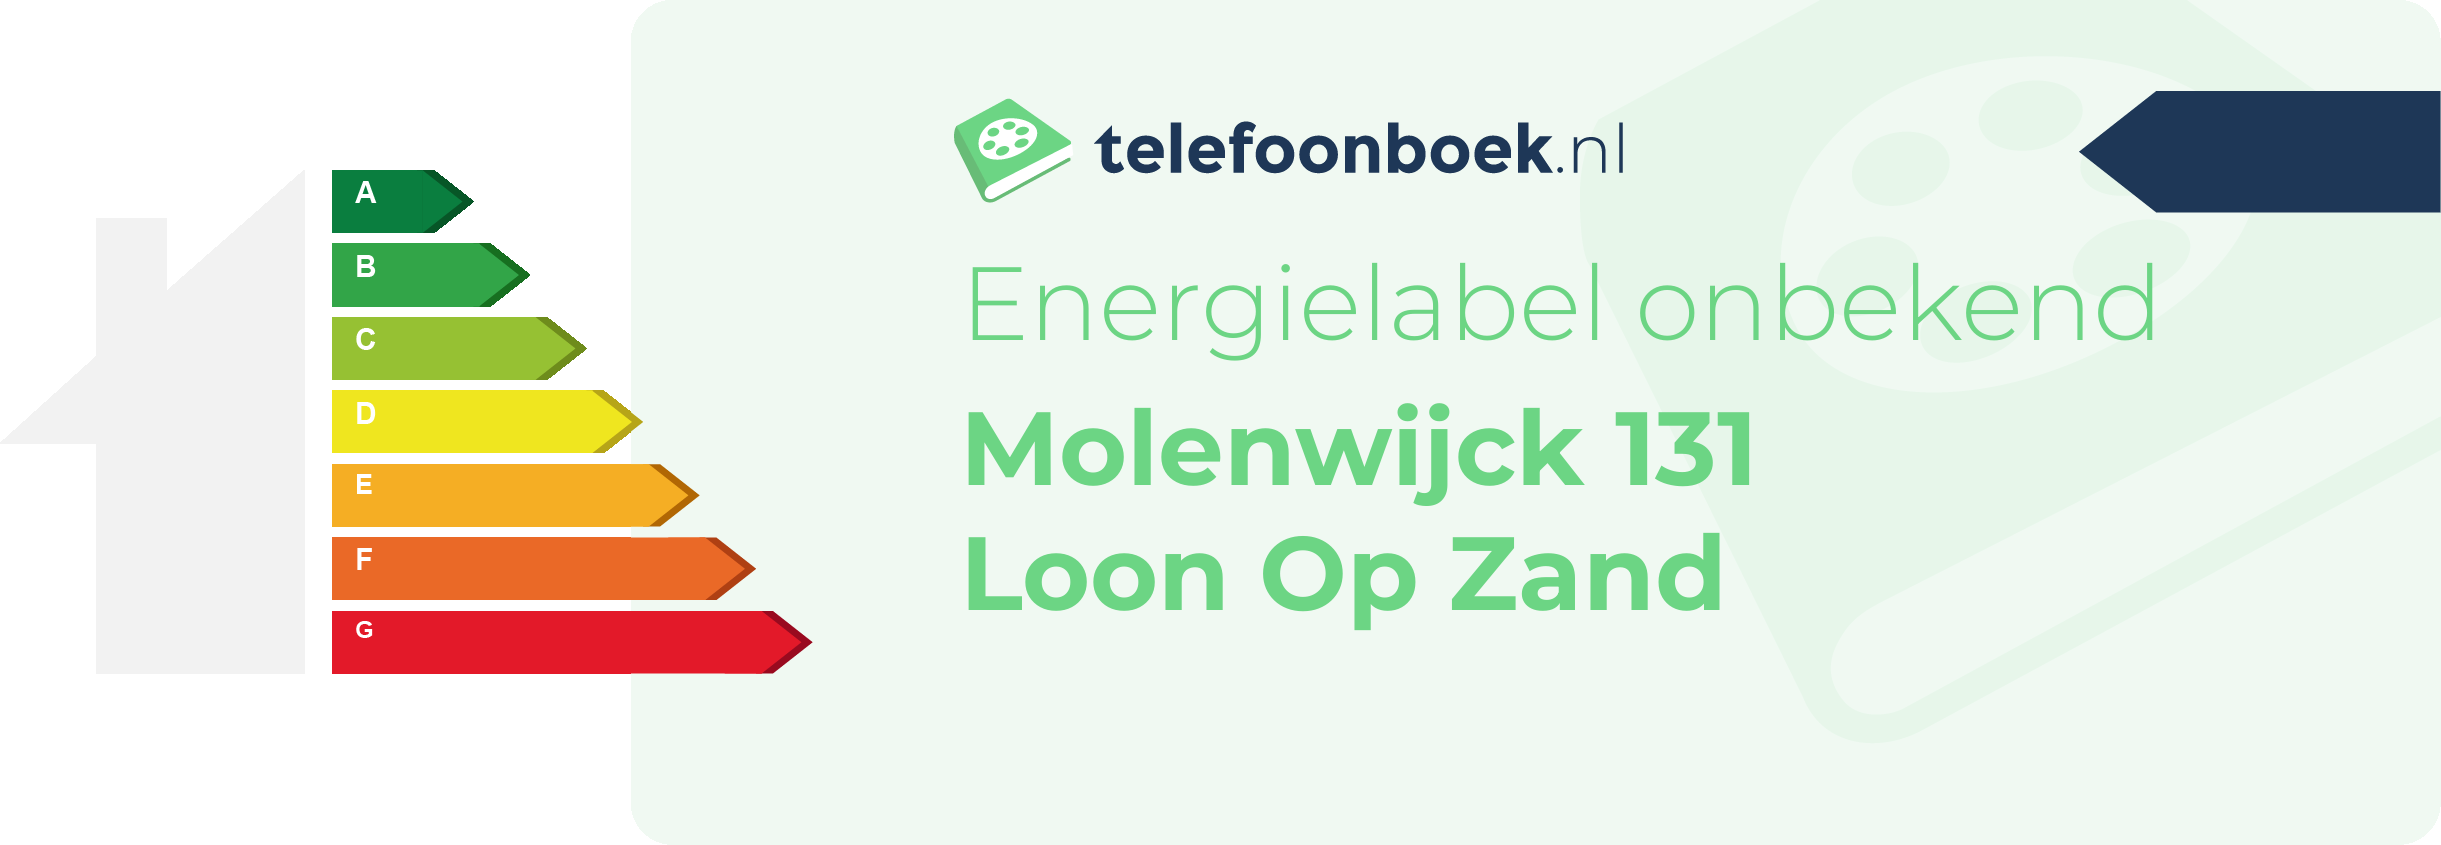 Energielabel Molenwijck 131 Loon Op Zand